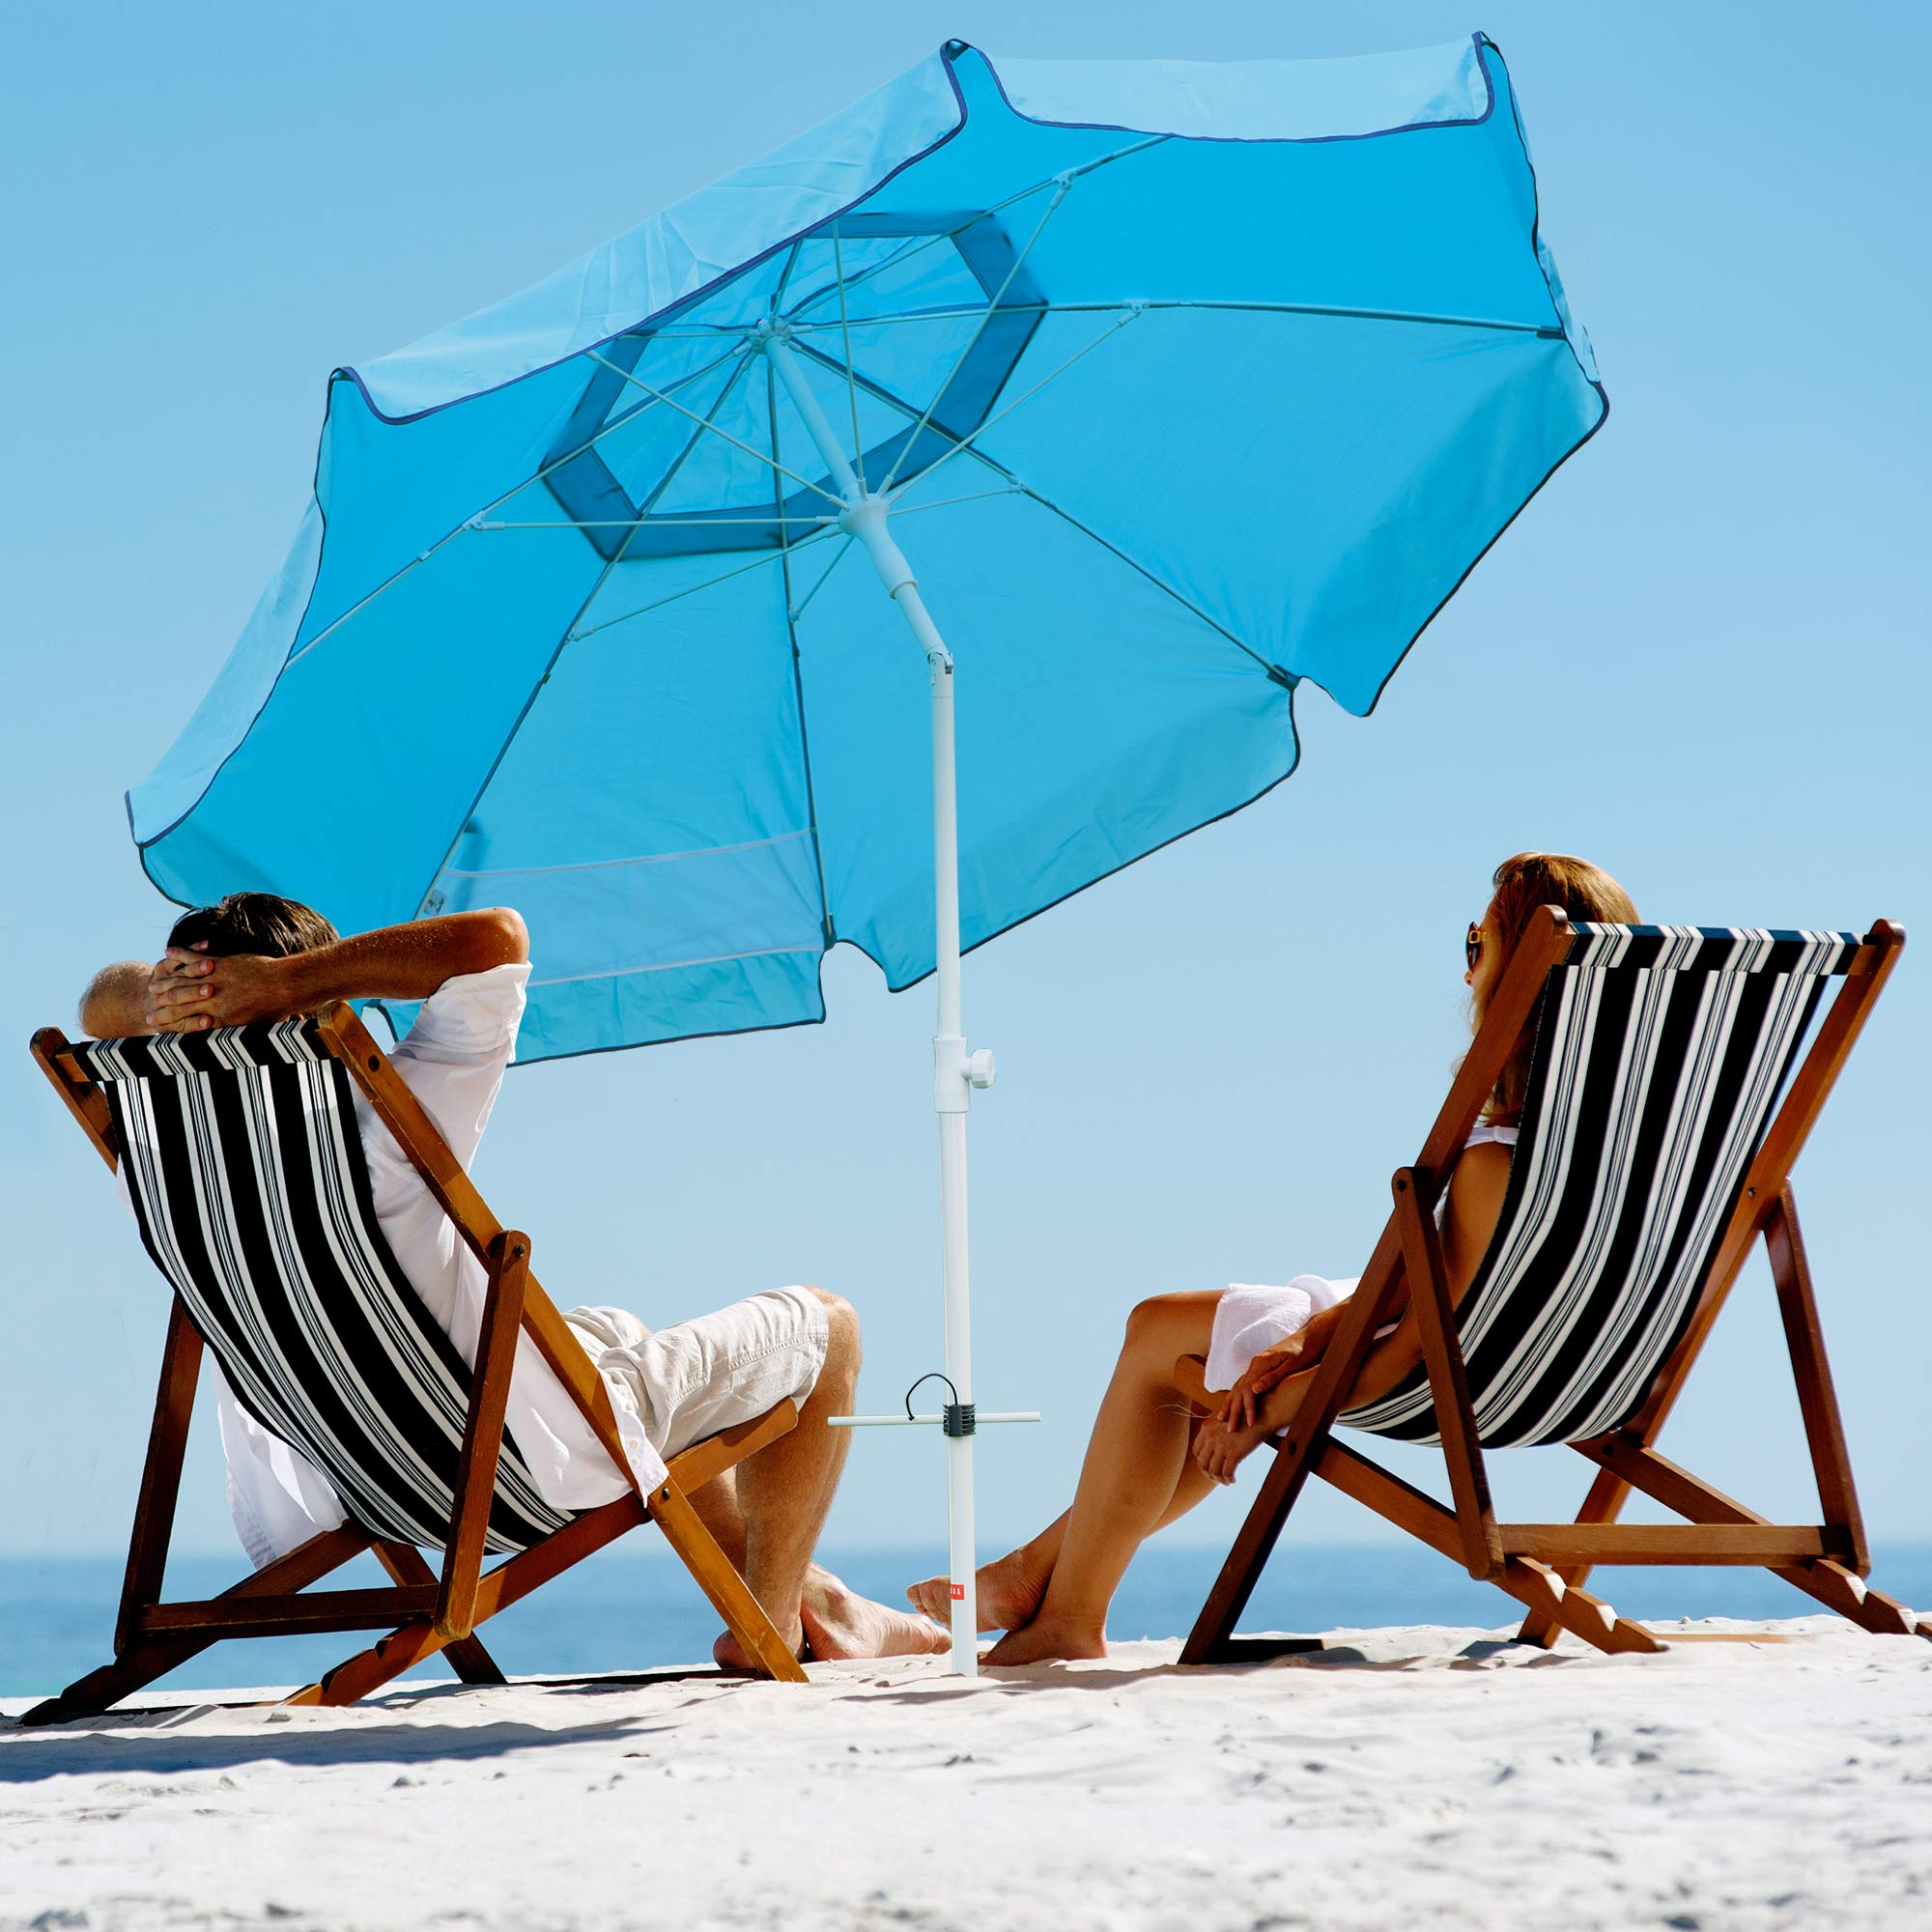 Abba Patio 7ft Beach Umbrella with Sand Anchor, Push Button Tilt and Carry Bag, UV 50+ Protection Windproof Portable Patio Umbrella for Garden Beach Outdoor, Sky Blue